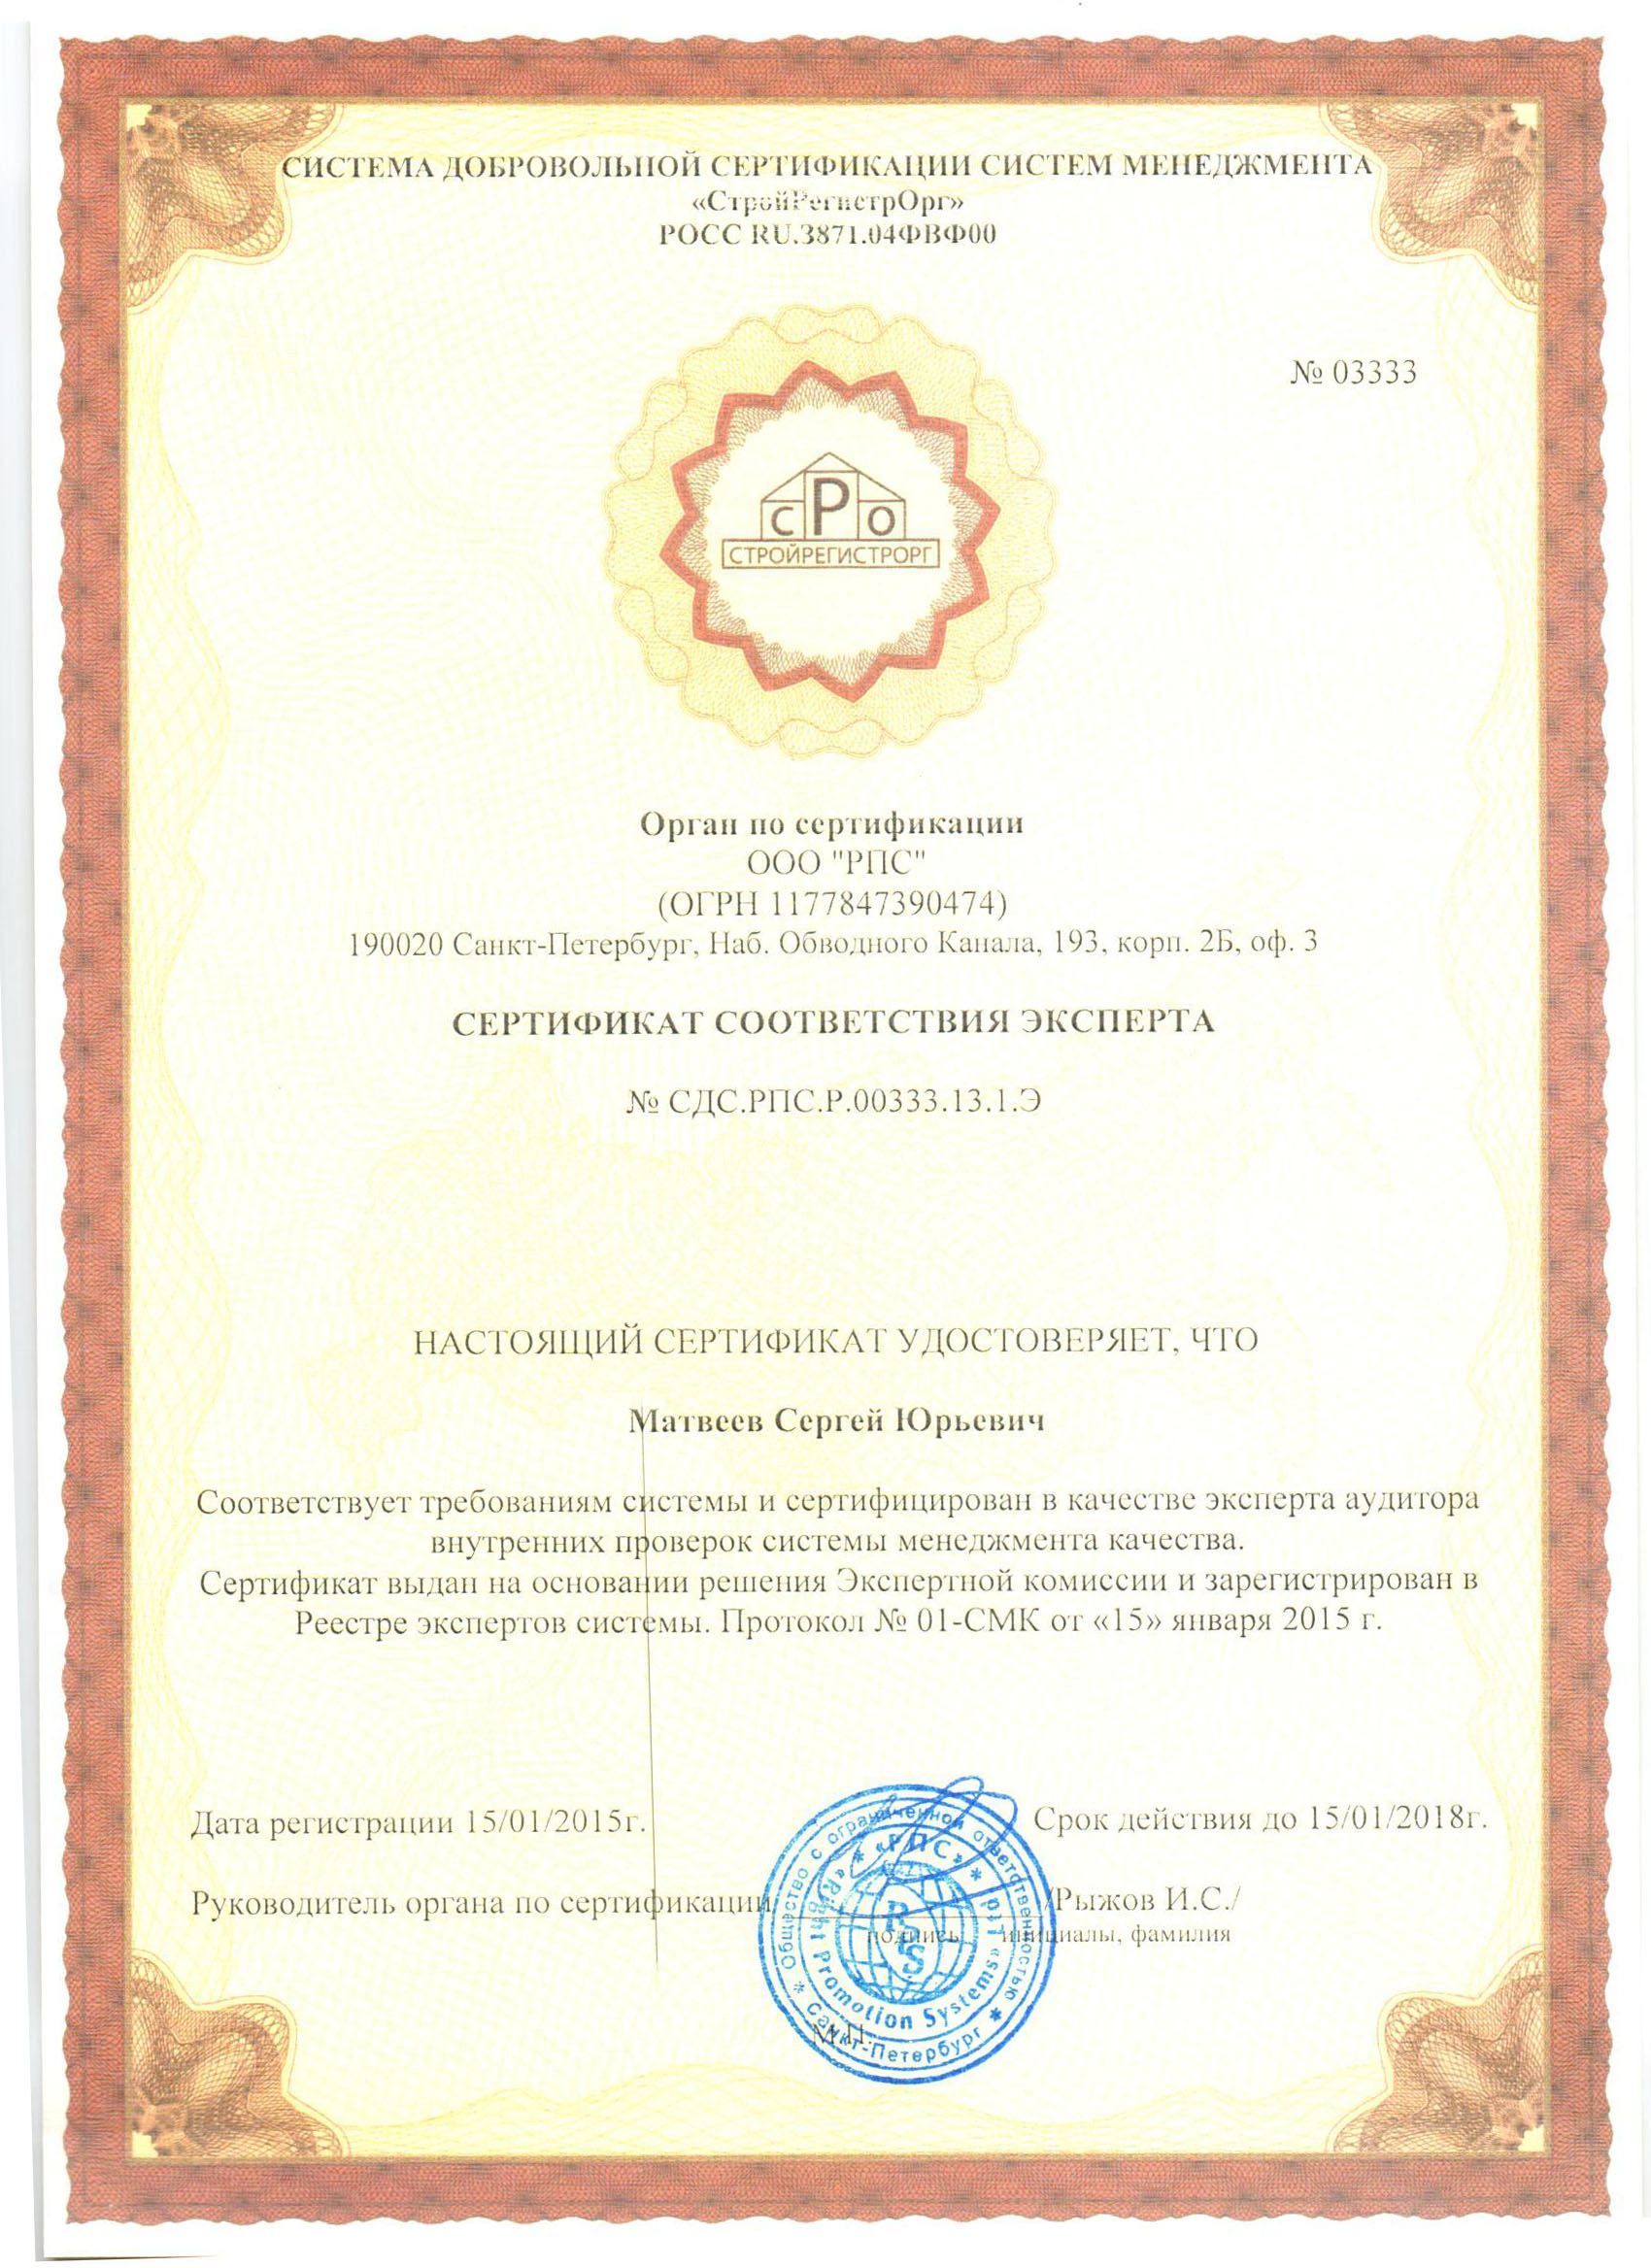 Сертификат соответствия эксперта Матвеев С.Ю.